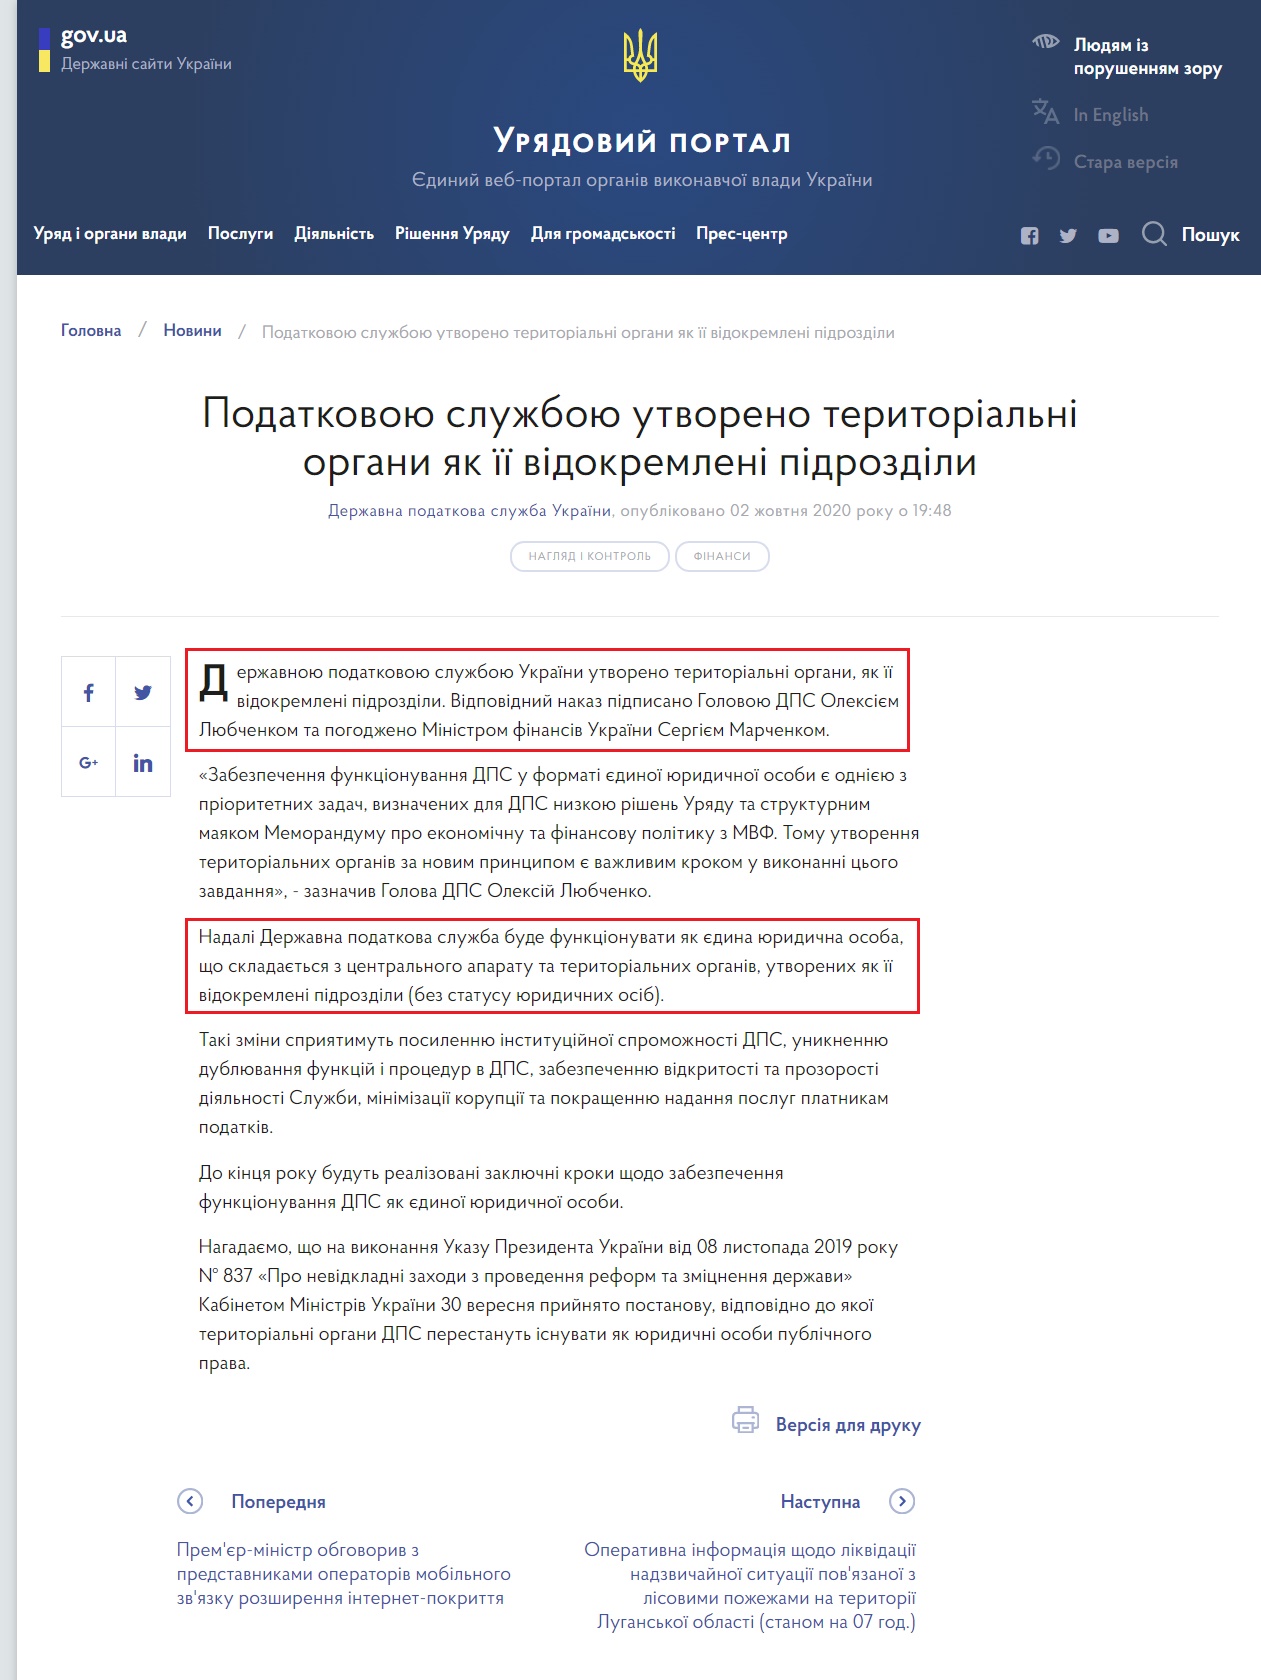 https://www.kmu.gov.ua/news/podatkovoyu-sluzhboyu-utvoreno-teritorialni-organi-yak-yiyi-vidokremleni-pidrozdili